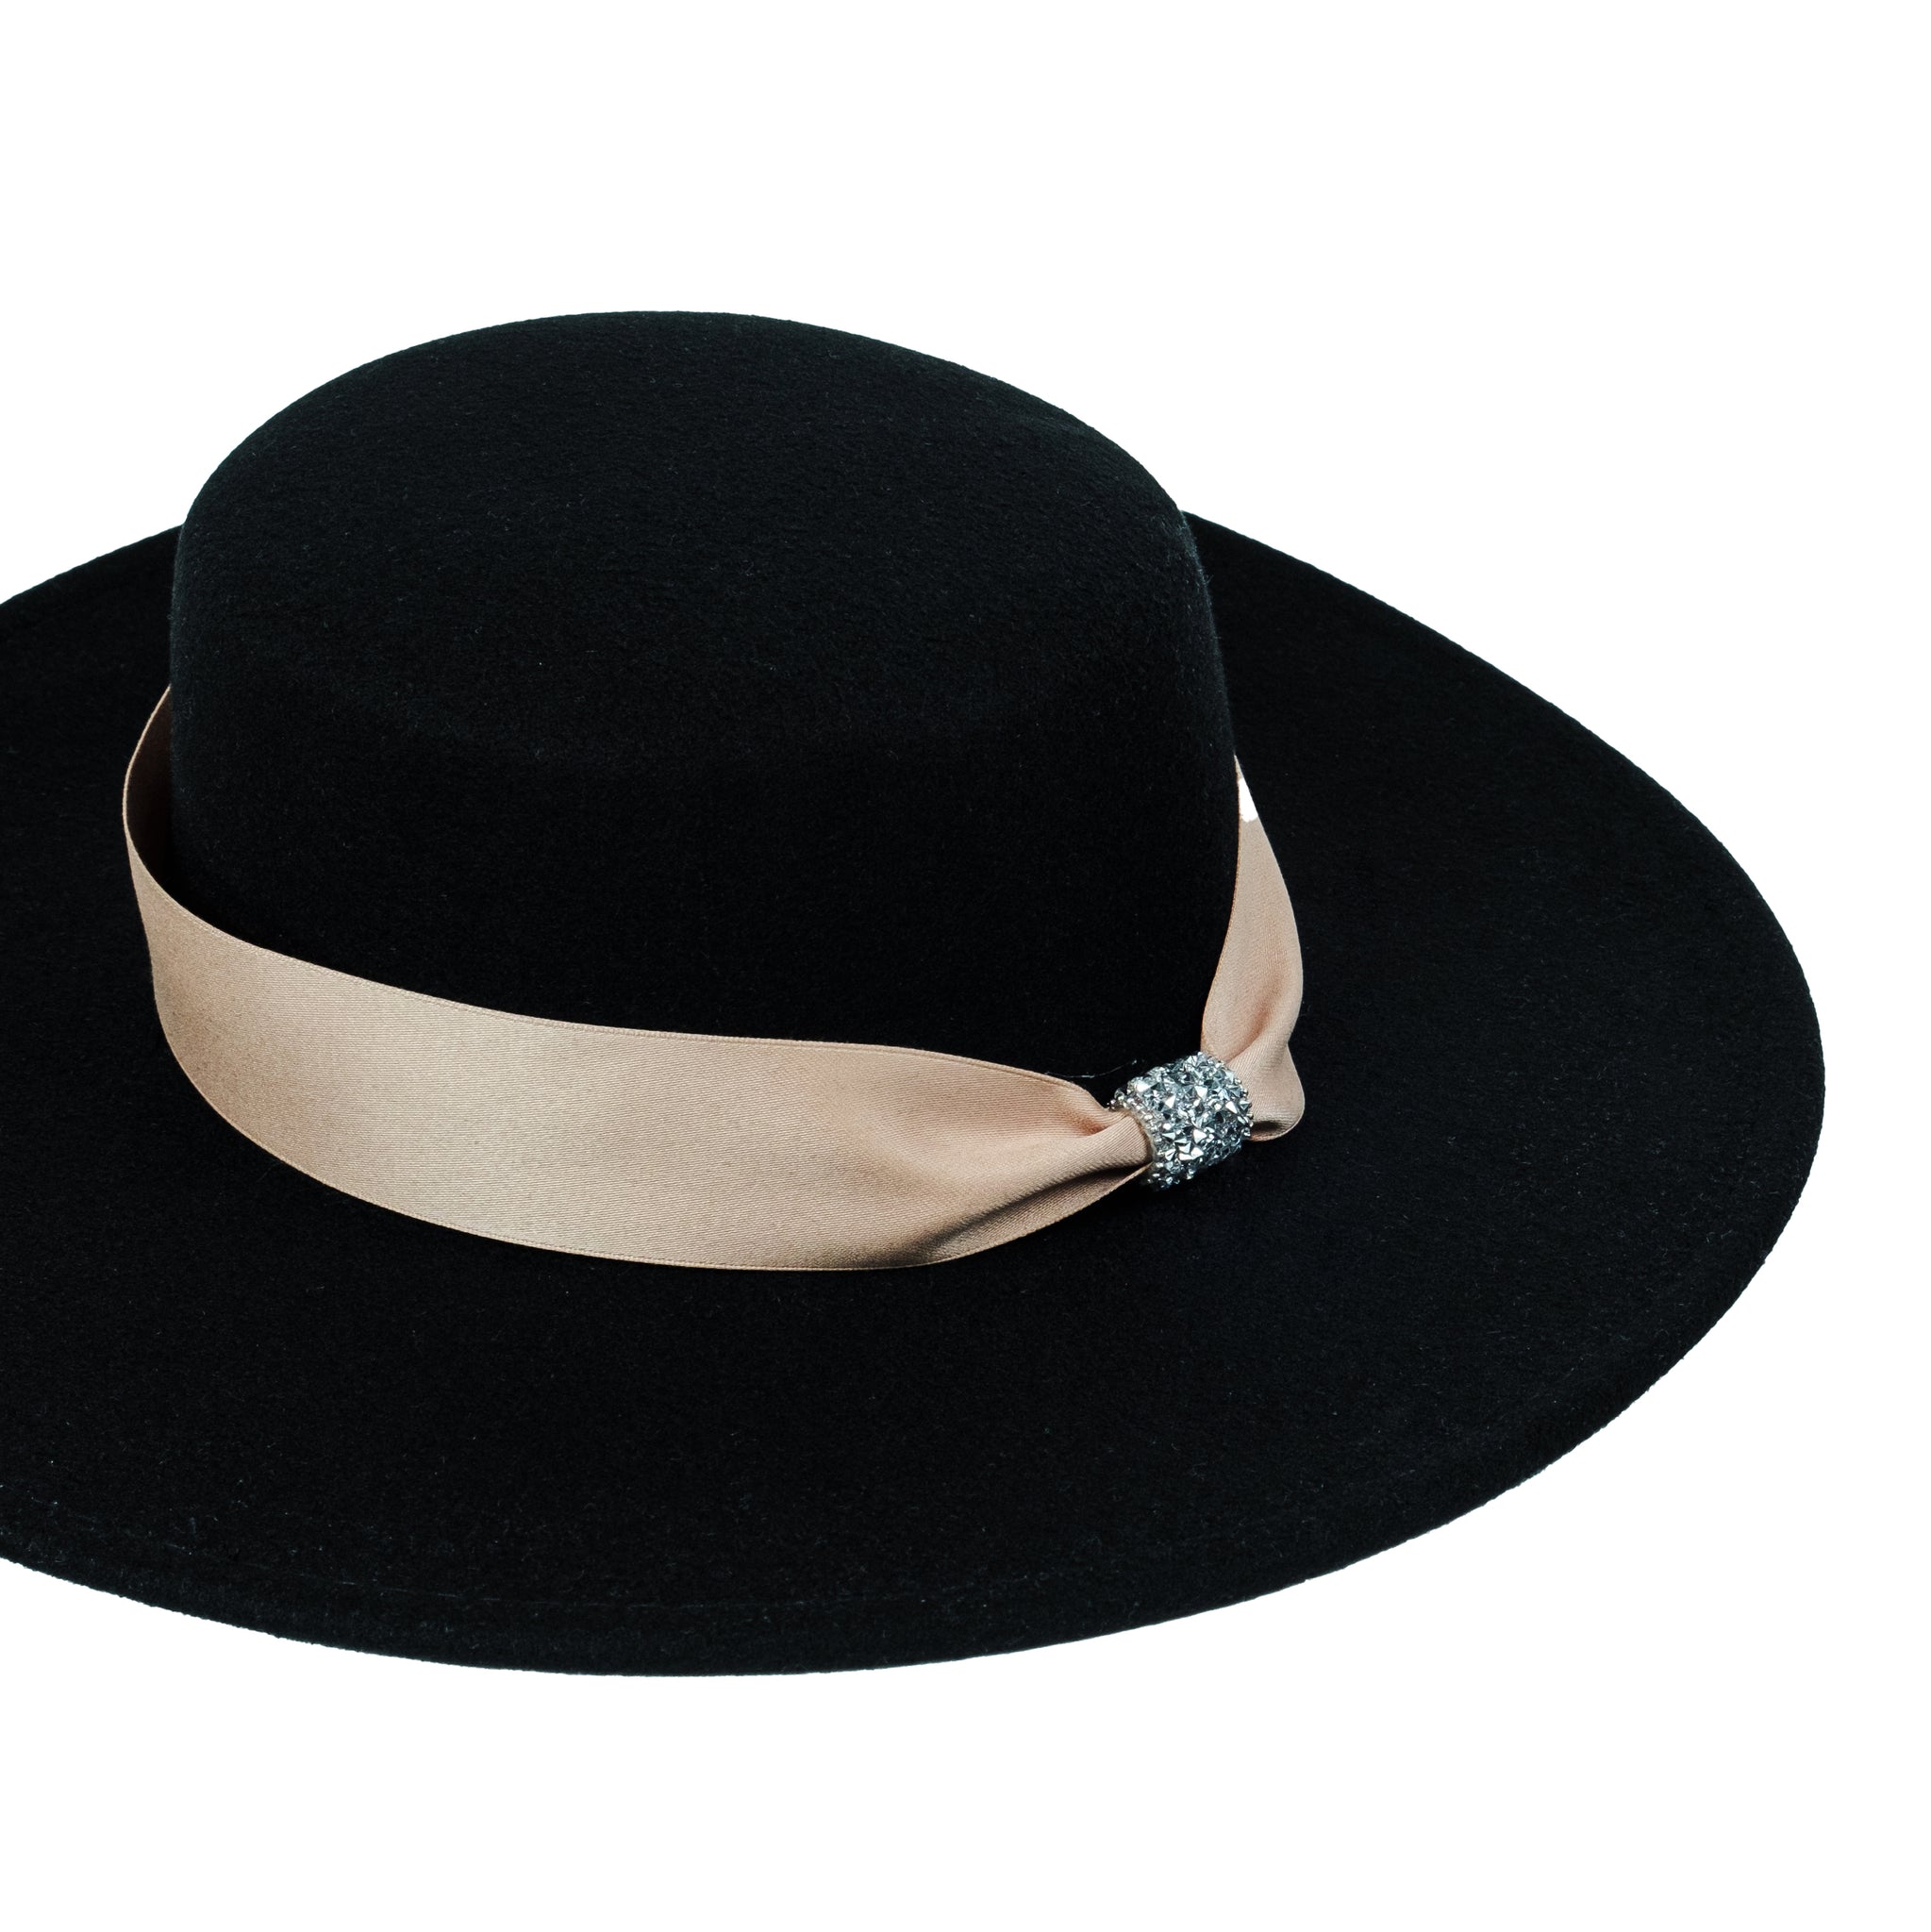 Chokore Wide Brim Boater Hat (Black)